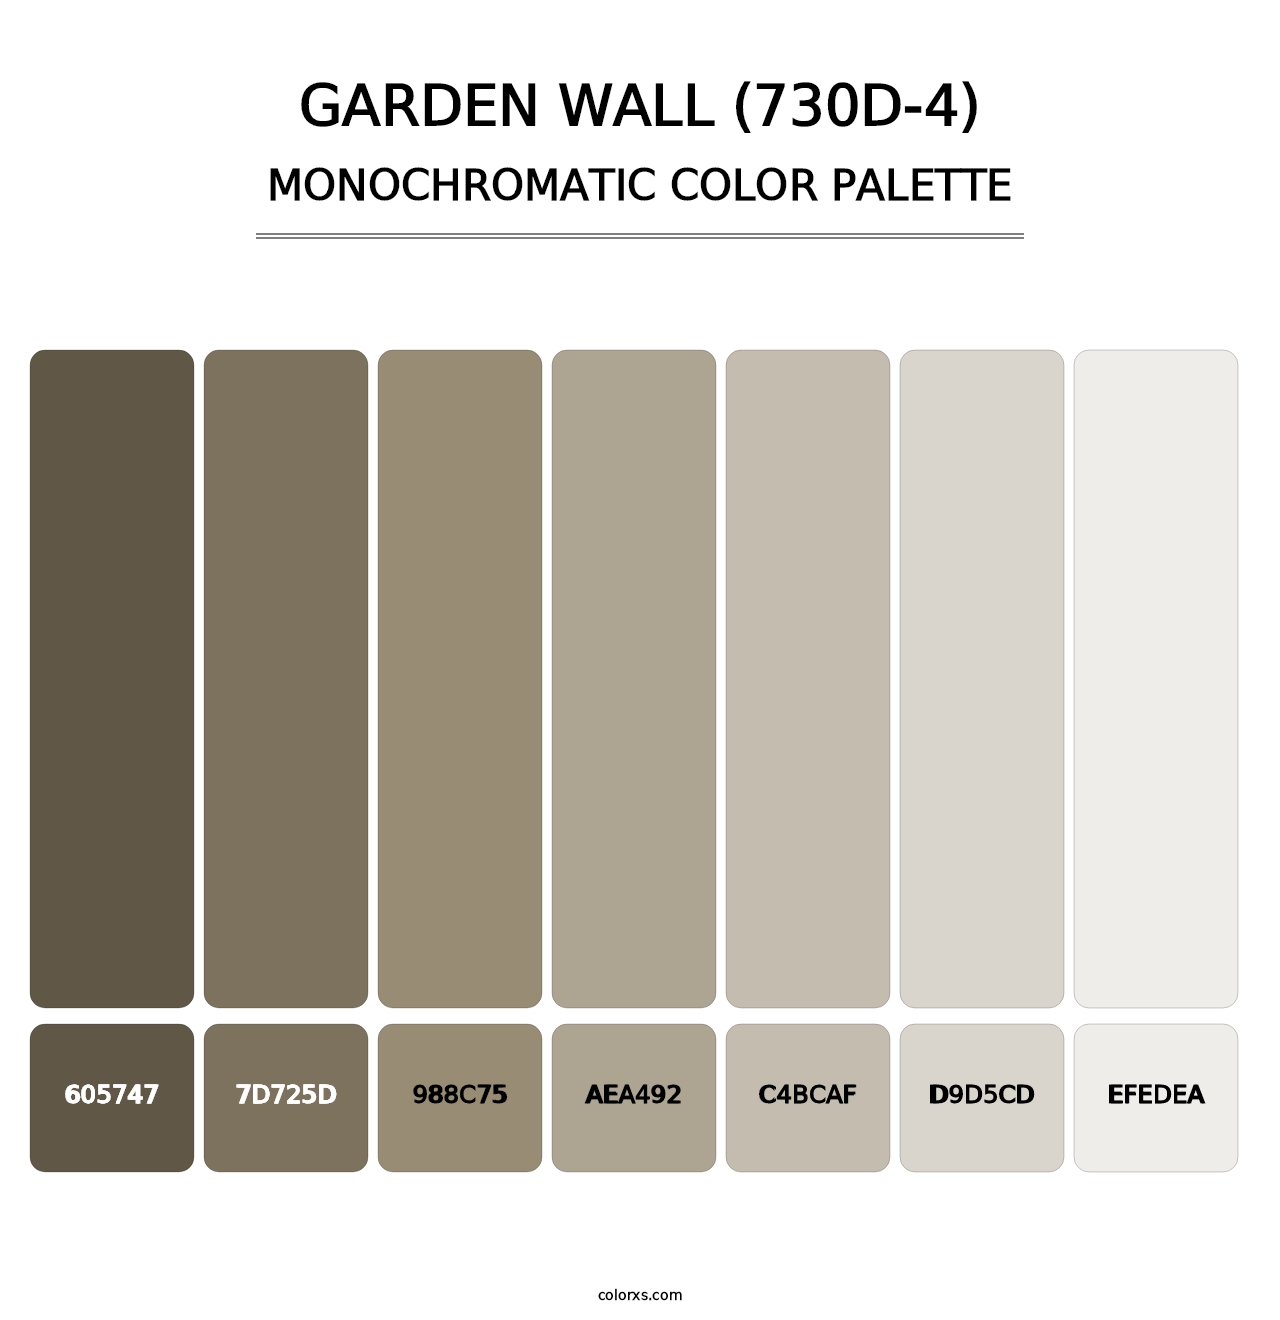 Garden Wall (730D-4) - Monochromatic Color Palette